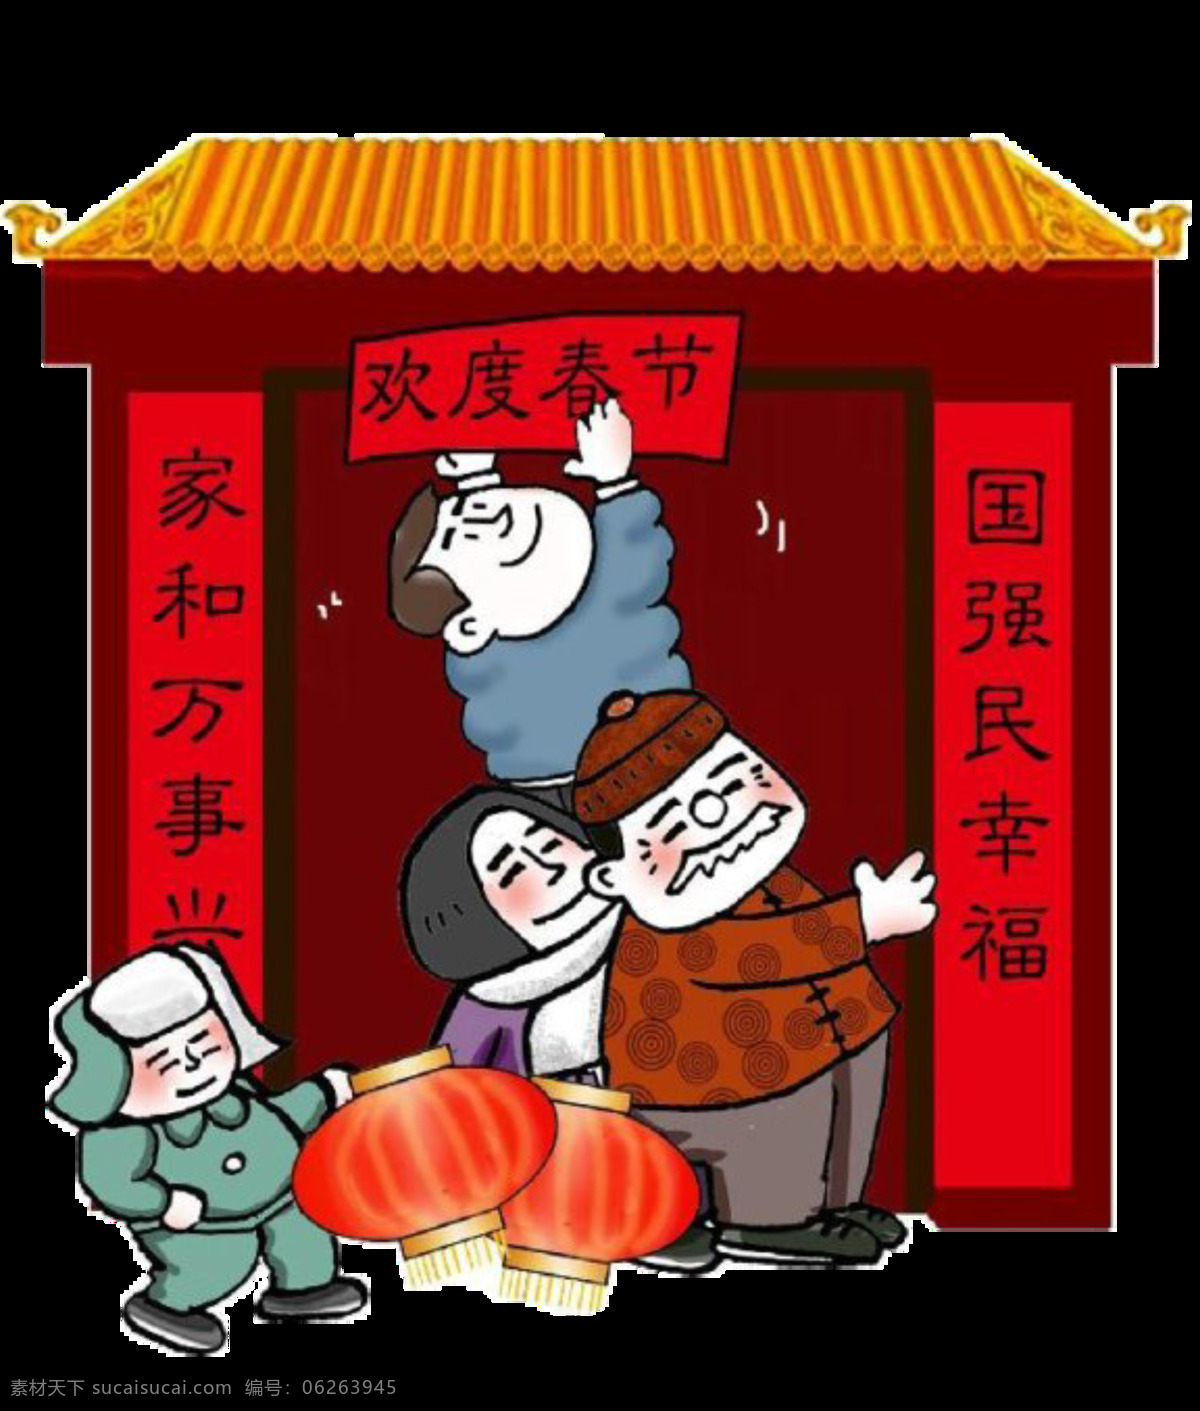 中国 风 春节 贴 对联 2018狗年 大吉大利 灯笼 欢度春节 家和万事兴 贴对联 新年习俗 新年元素